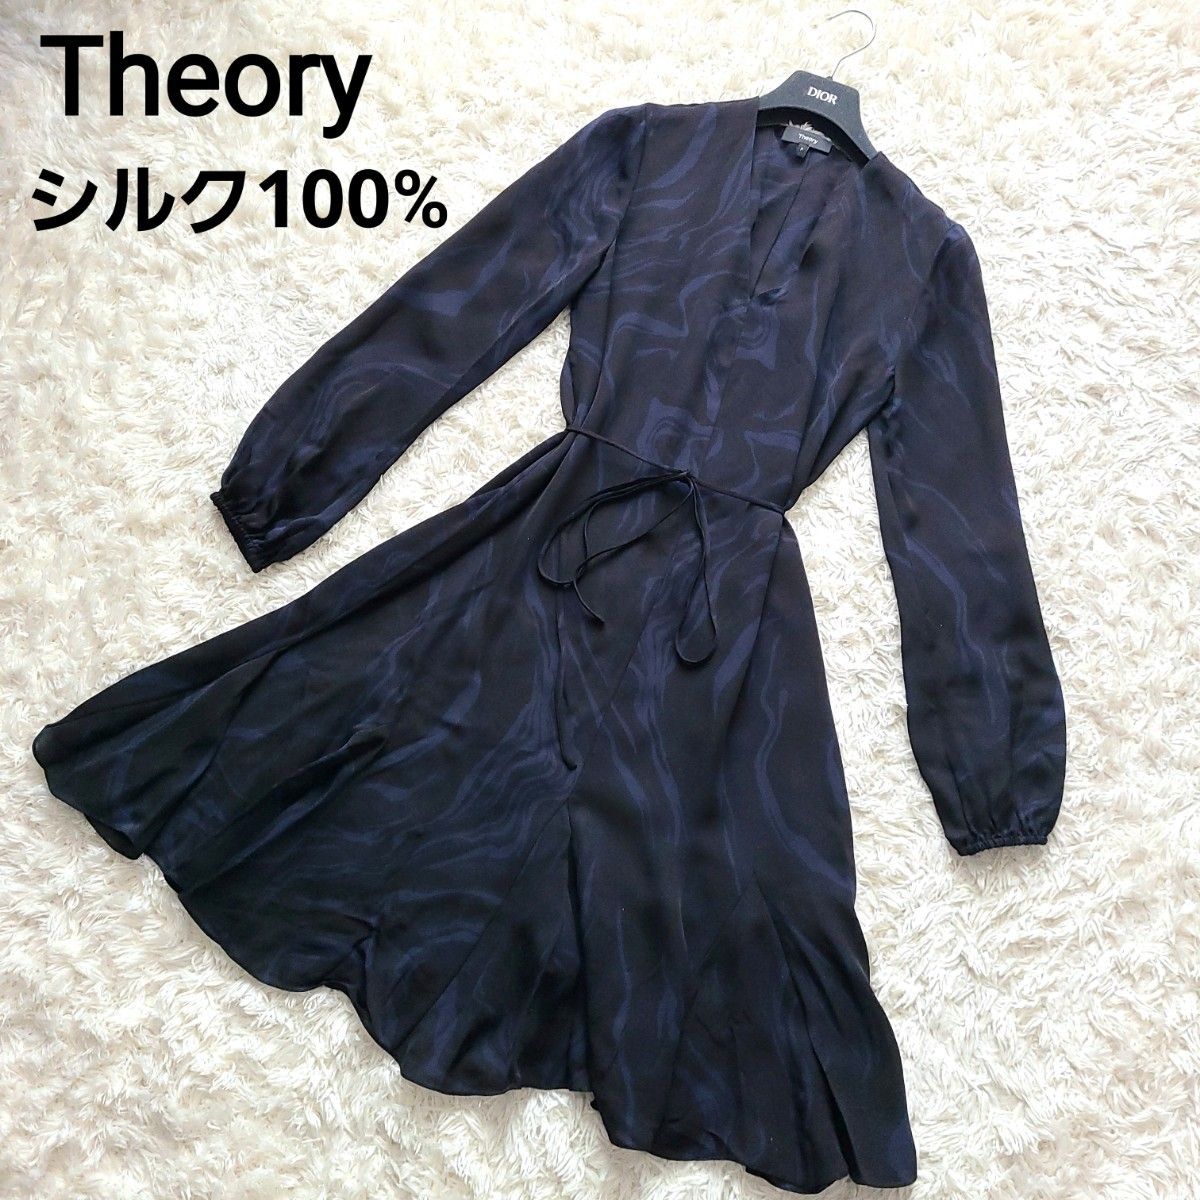 Theory セオリー シルク ドレス ワンピース オイル柄 黒 紺 Mサイズ相当 2020年 超人気 完売品 極美品